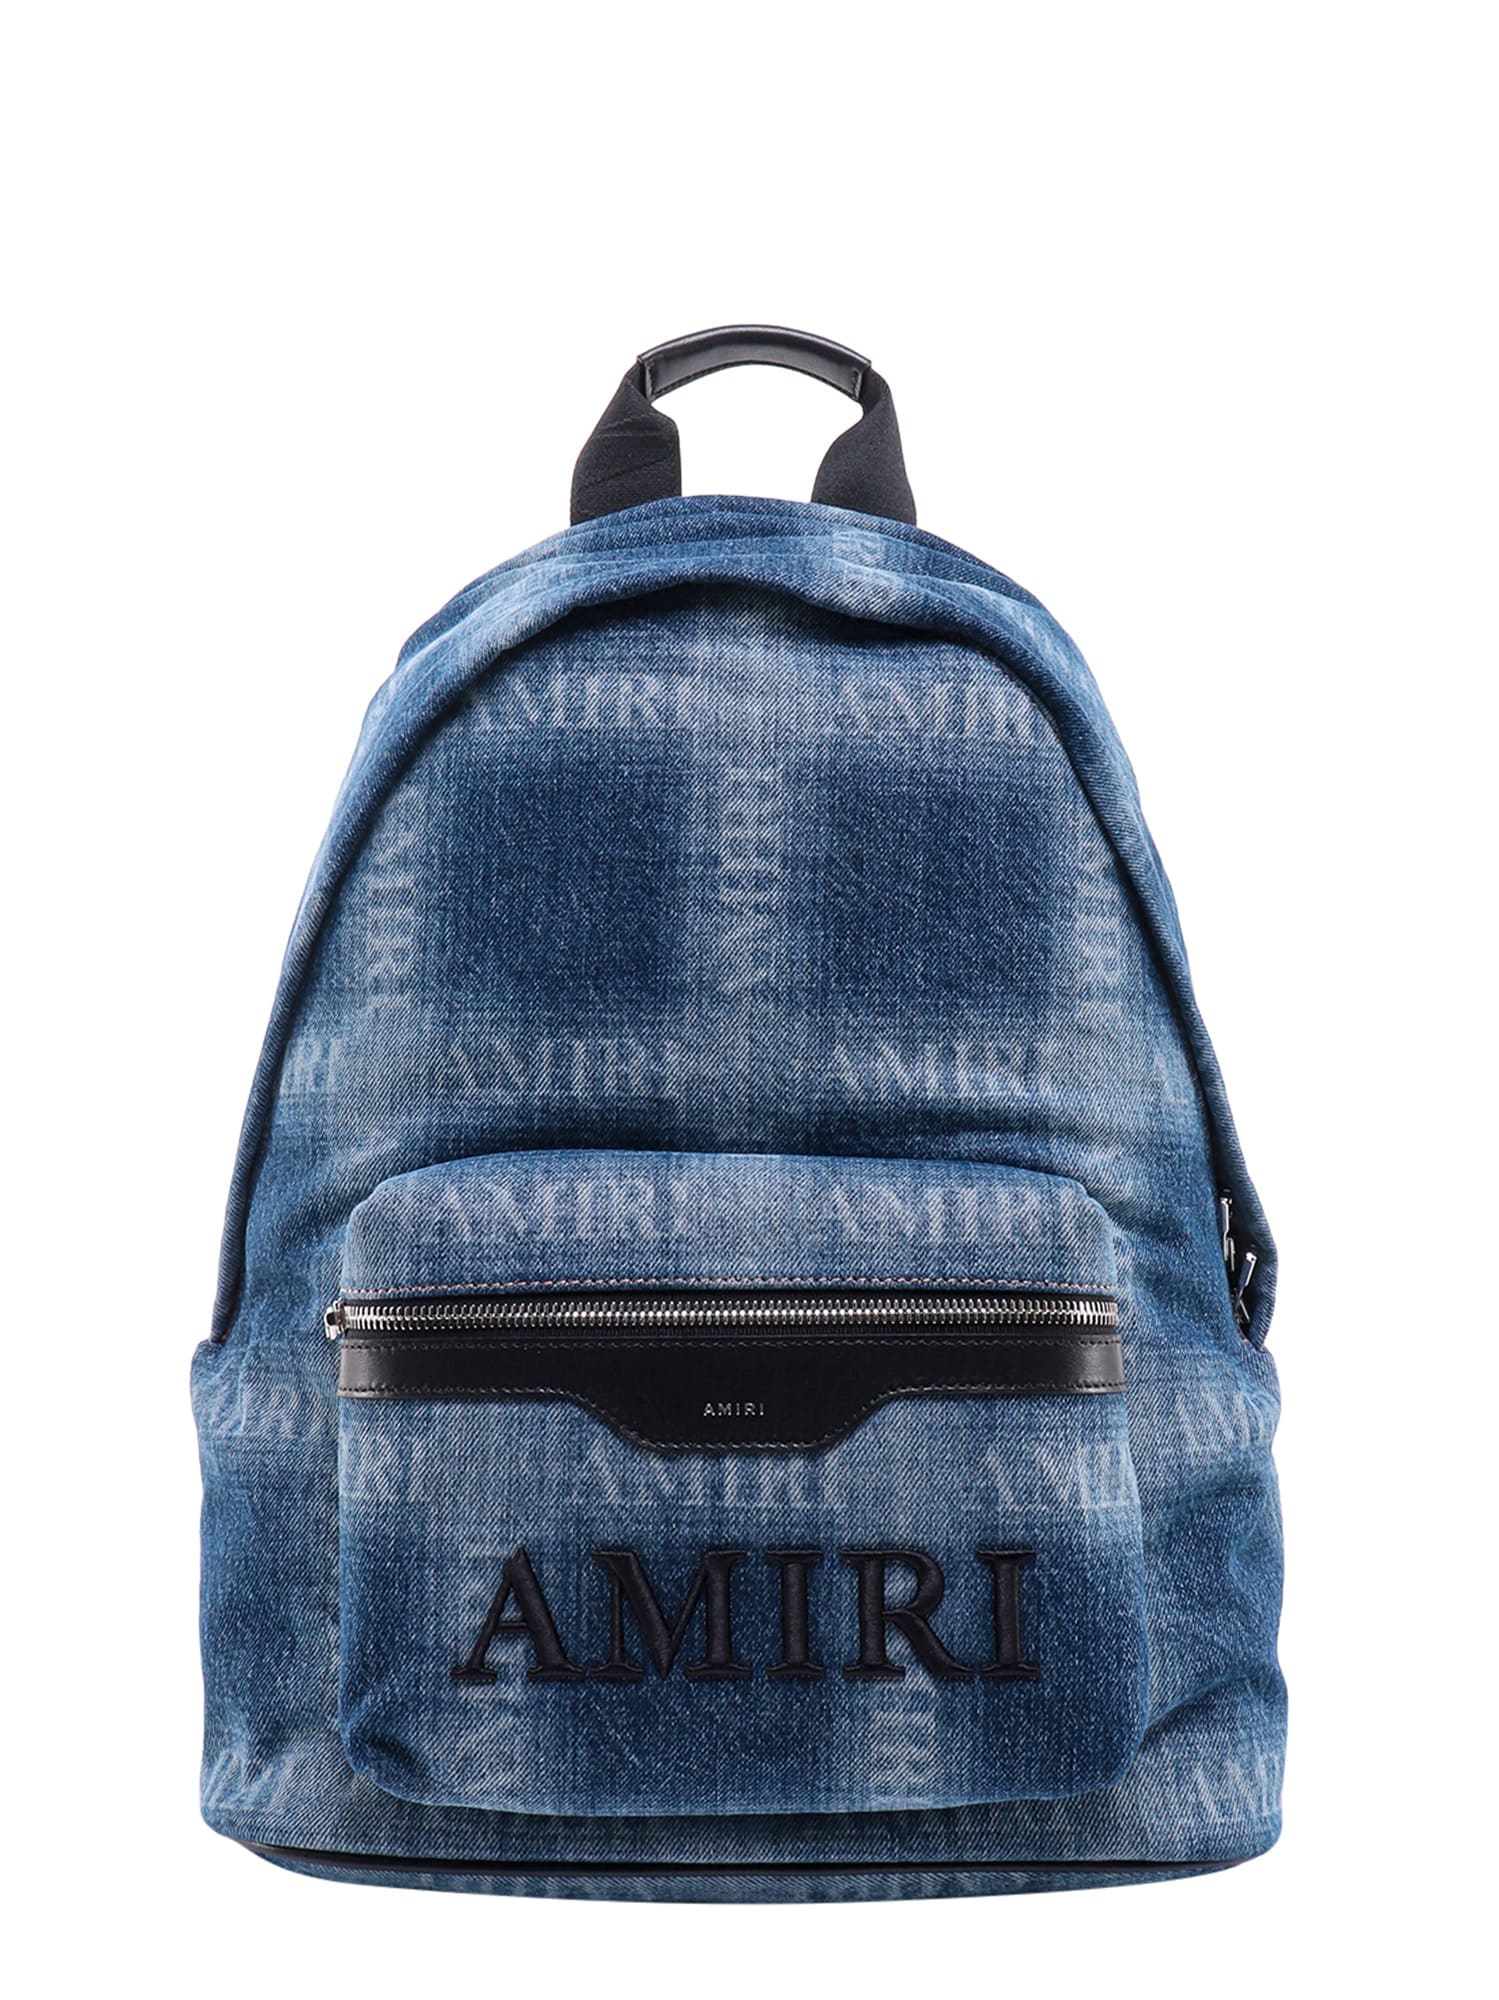 AMIRI Backpack